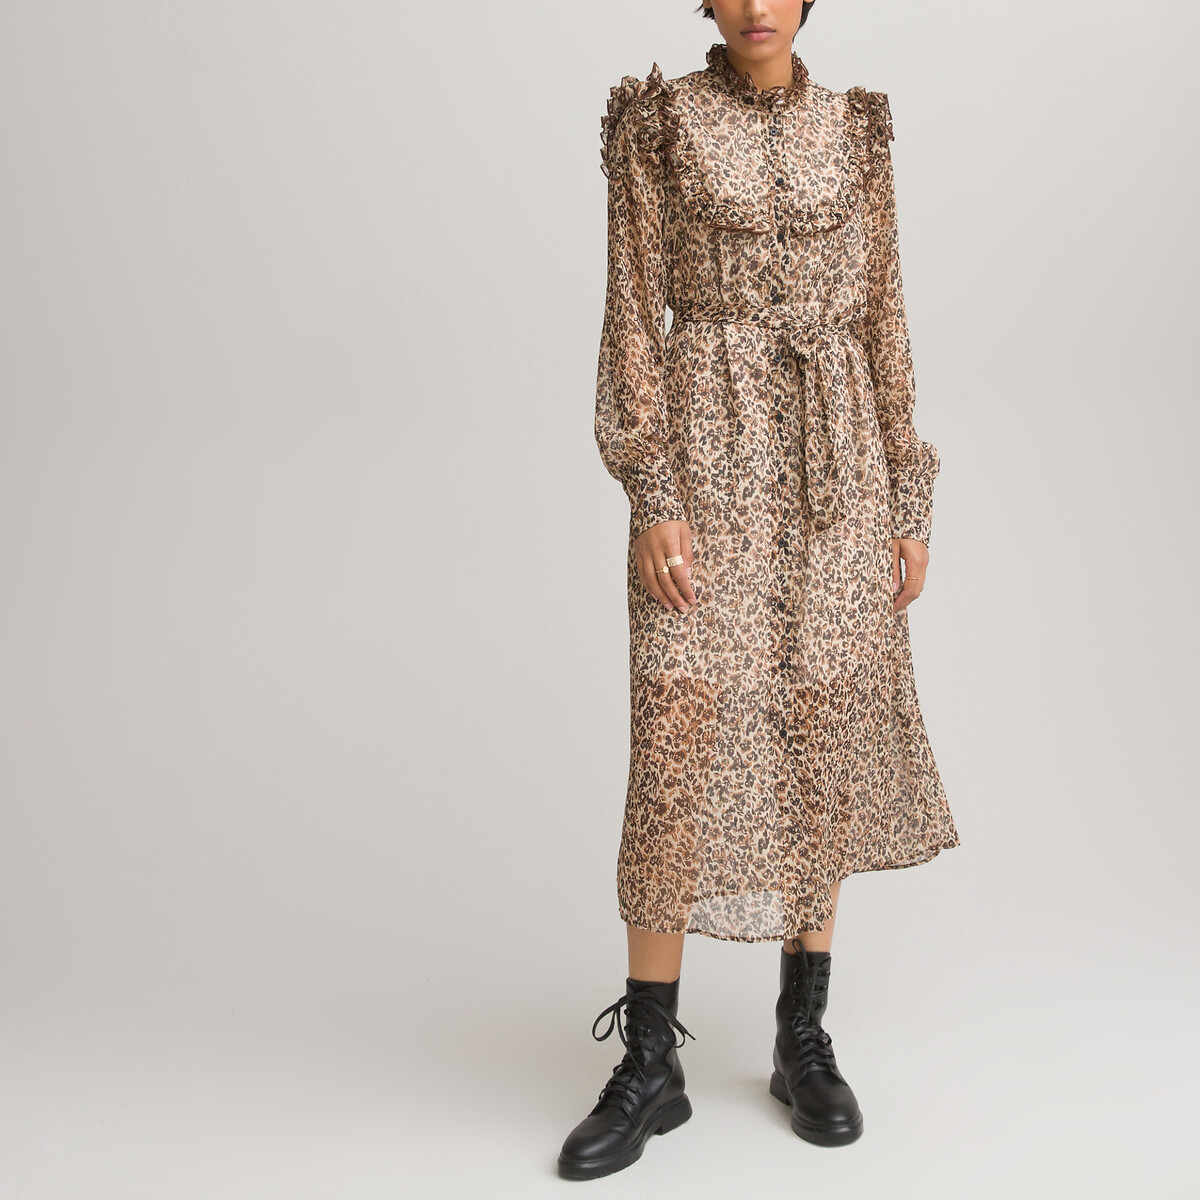 Vestido camisero largo amplio, con detalles de volantes estampado de leopardo La Redoute Collections | La Redoute